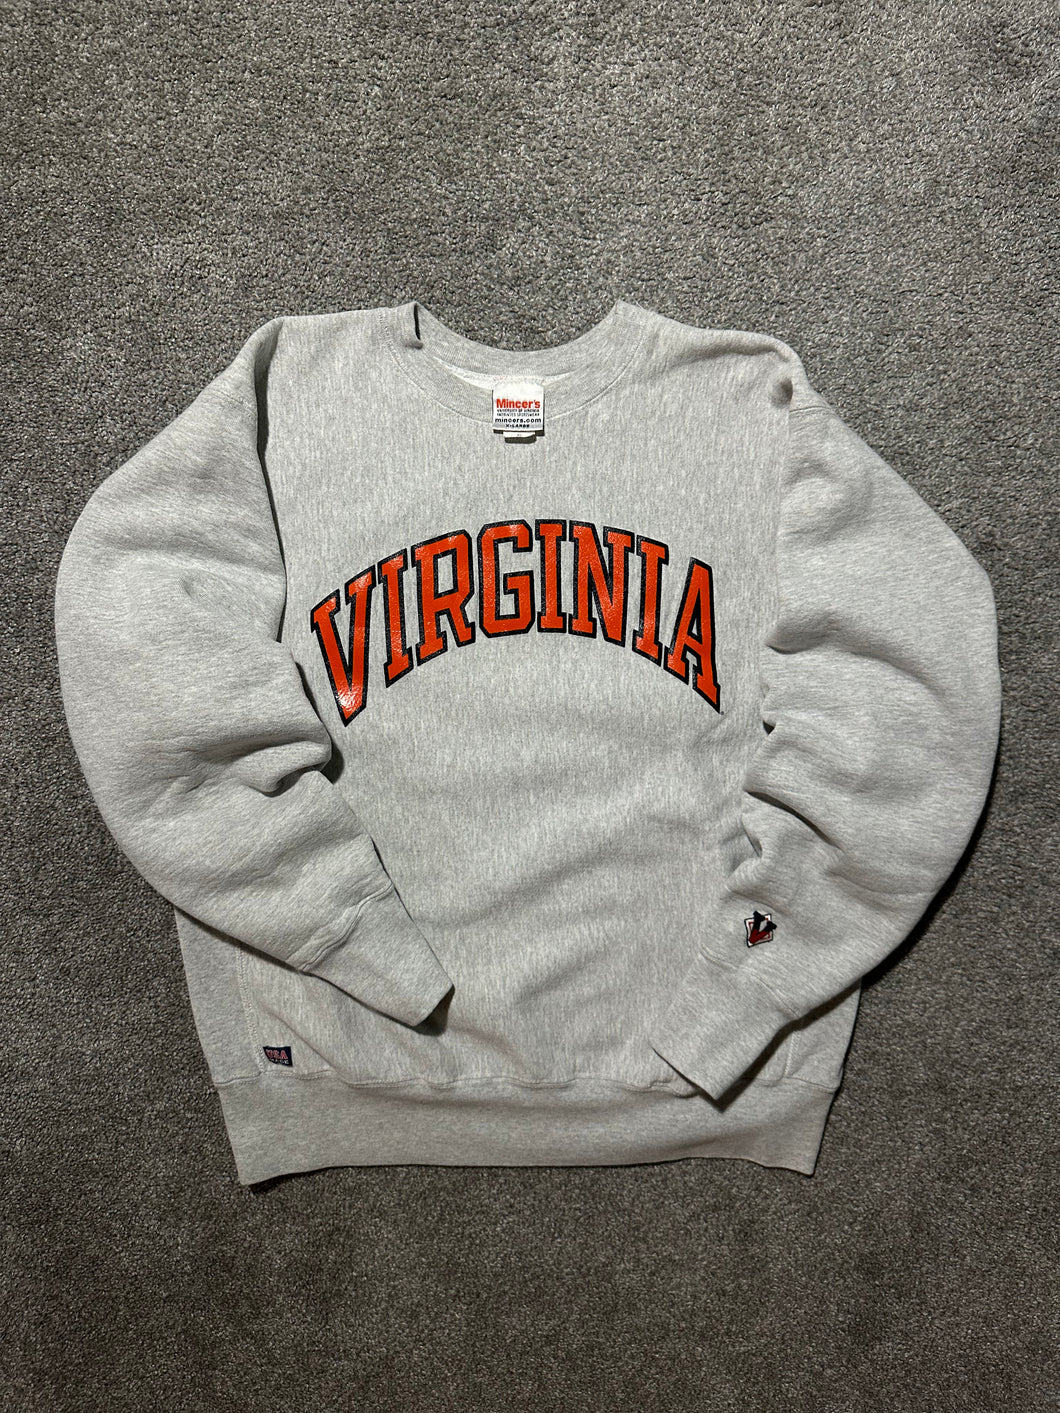 Vintage Virginia Cavaliers Reverse Weave Style Sweatshirt (L/XL)